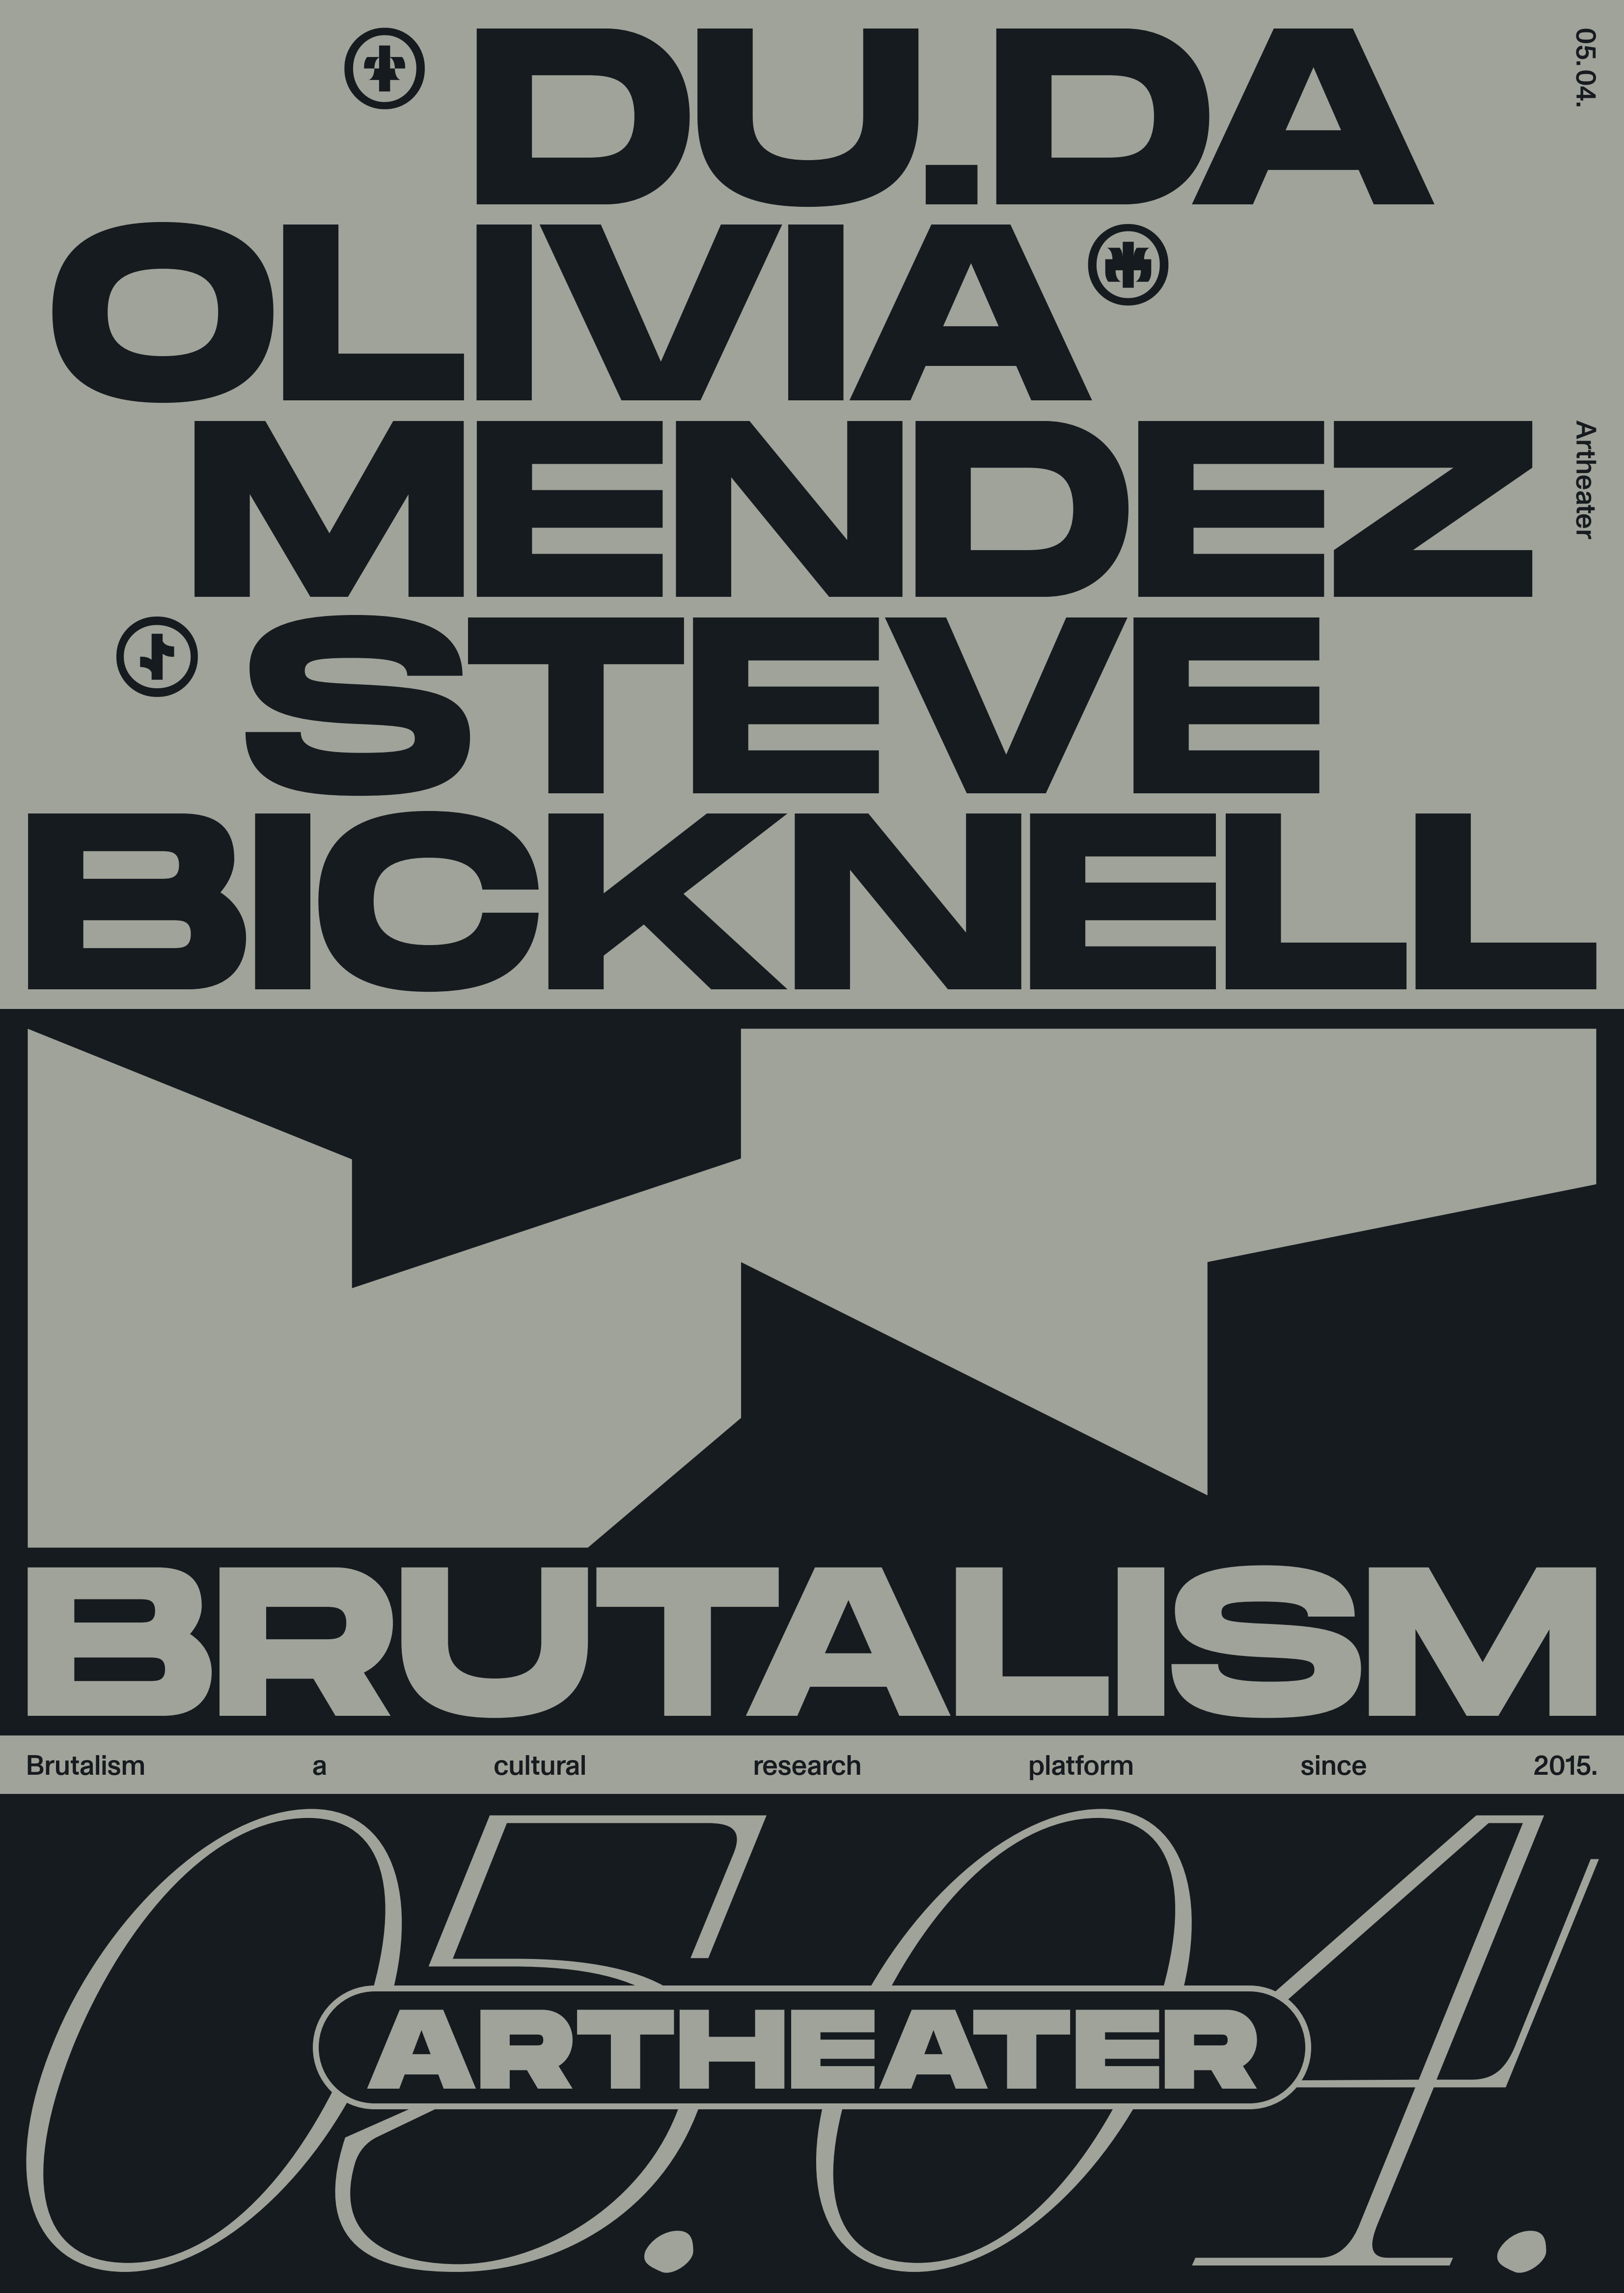 Brutalism with Olivia Mendez & Steve Bicknell - フライヤー表